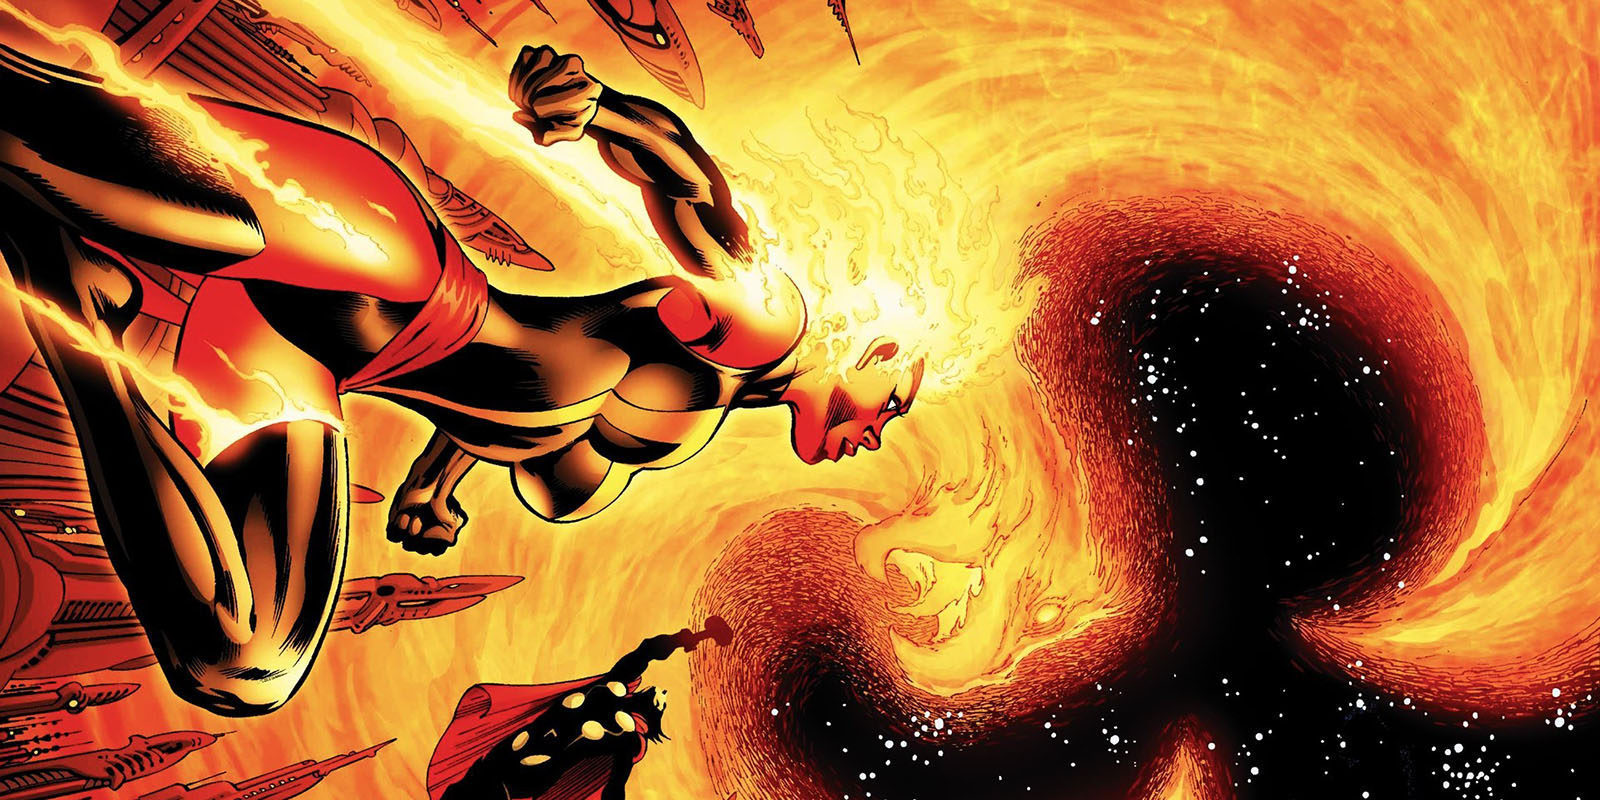 Jessica Chastain confirma que estará en 'X-Men: Dark Phoenix'